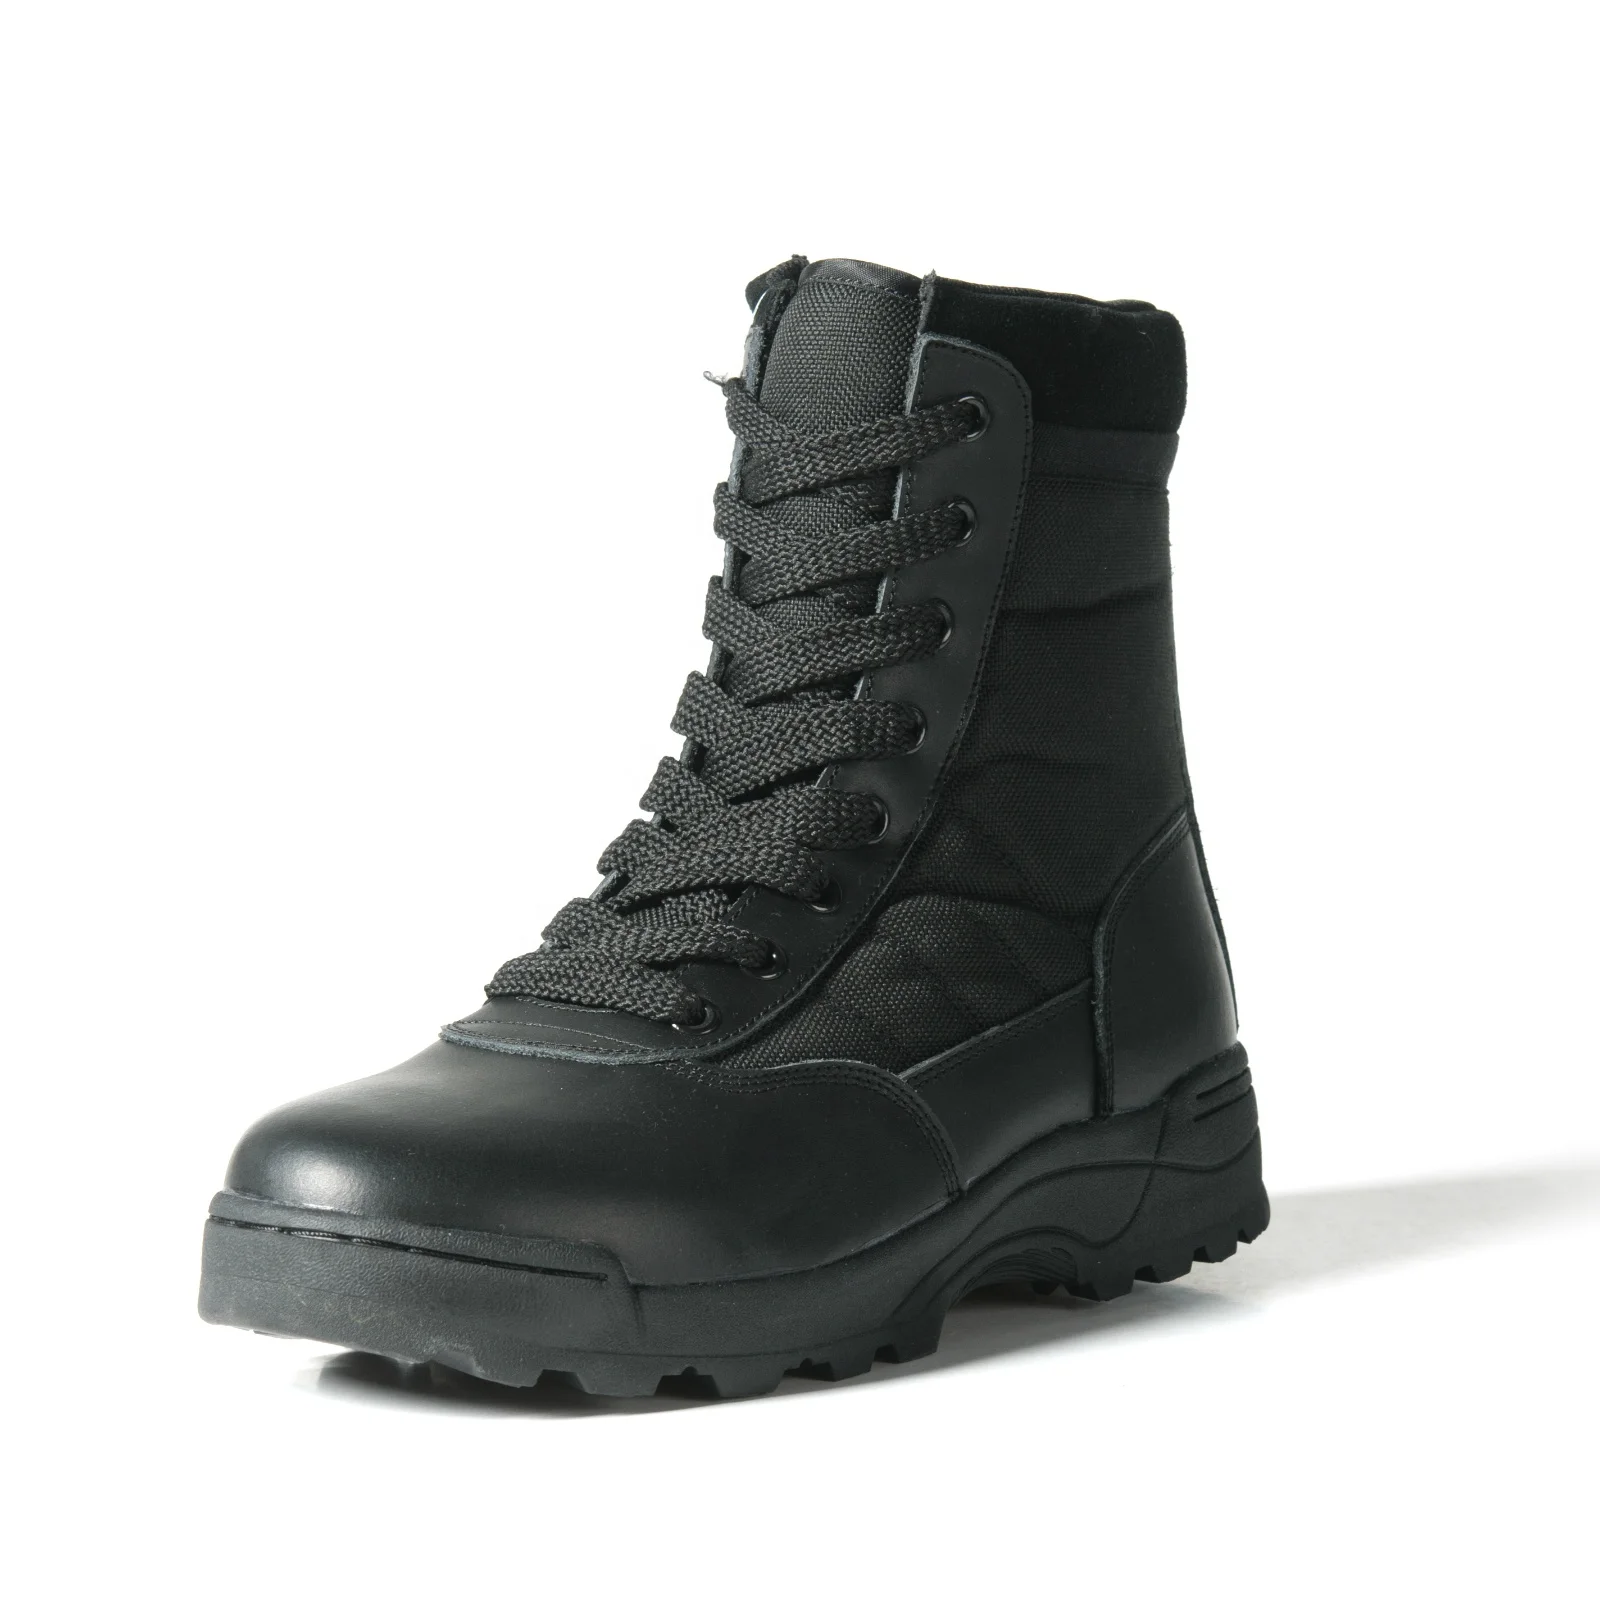 黑色军事战术靴子麂皮绒皮革牛津沙漠靴军事训练